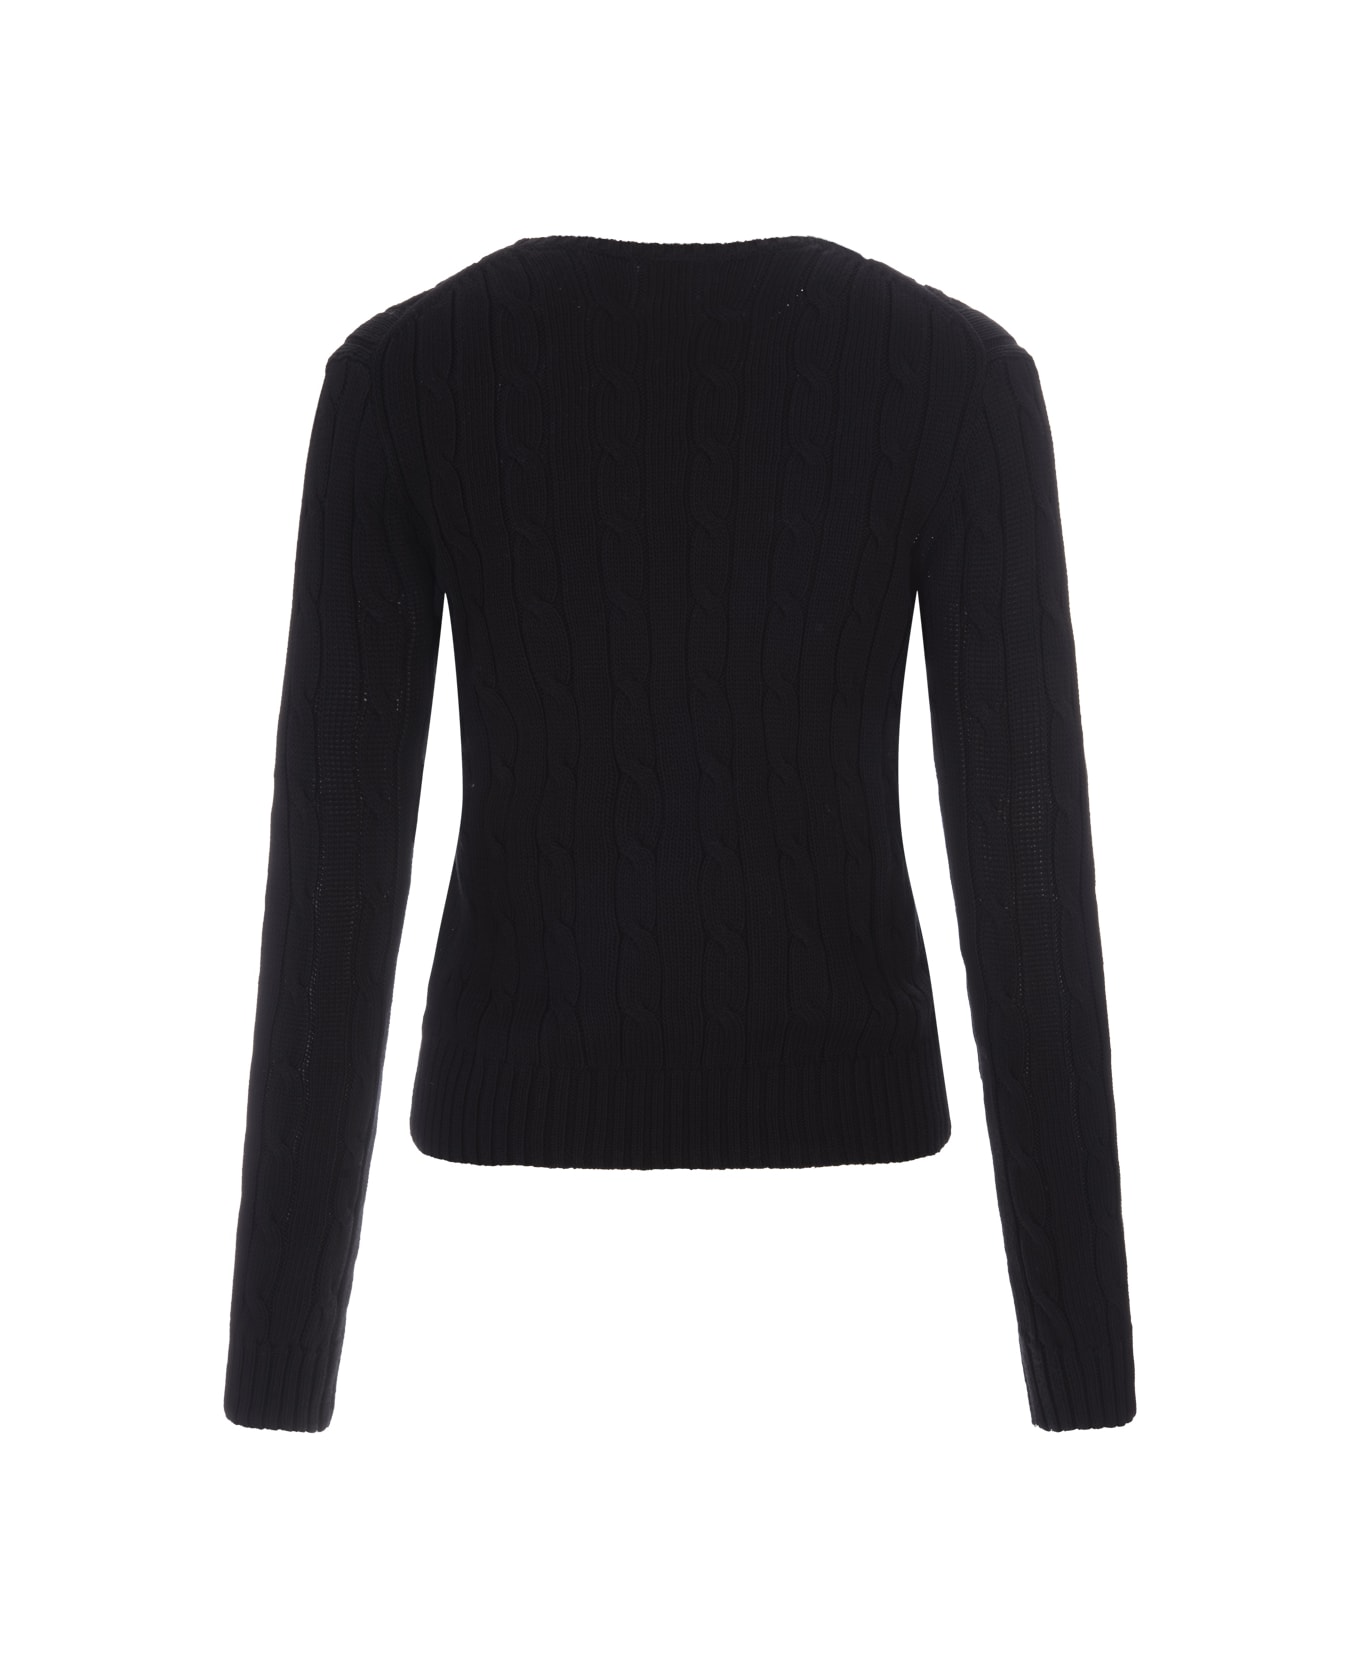 Ralph Lauren Crew Neck Sweater In Black Braided Knit - Black ニットウェア